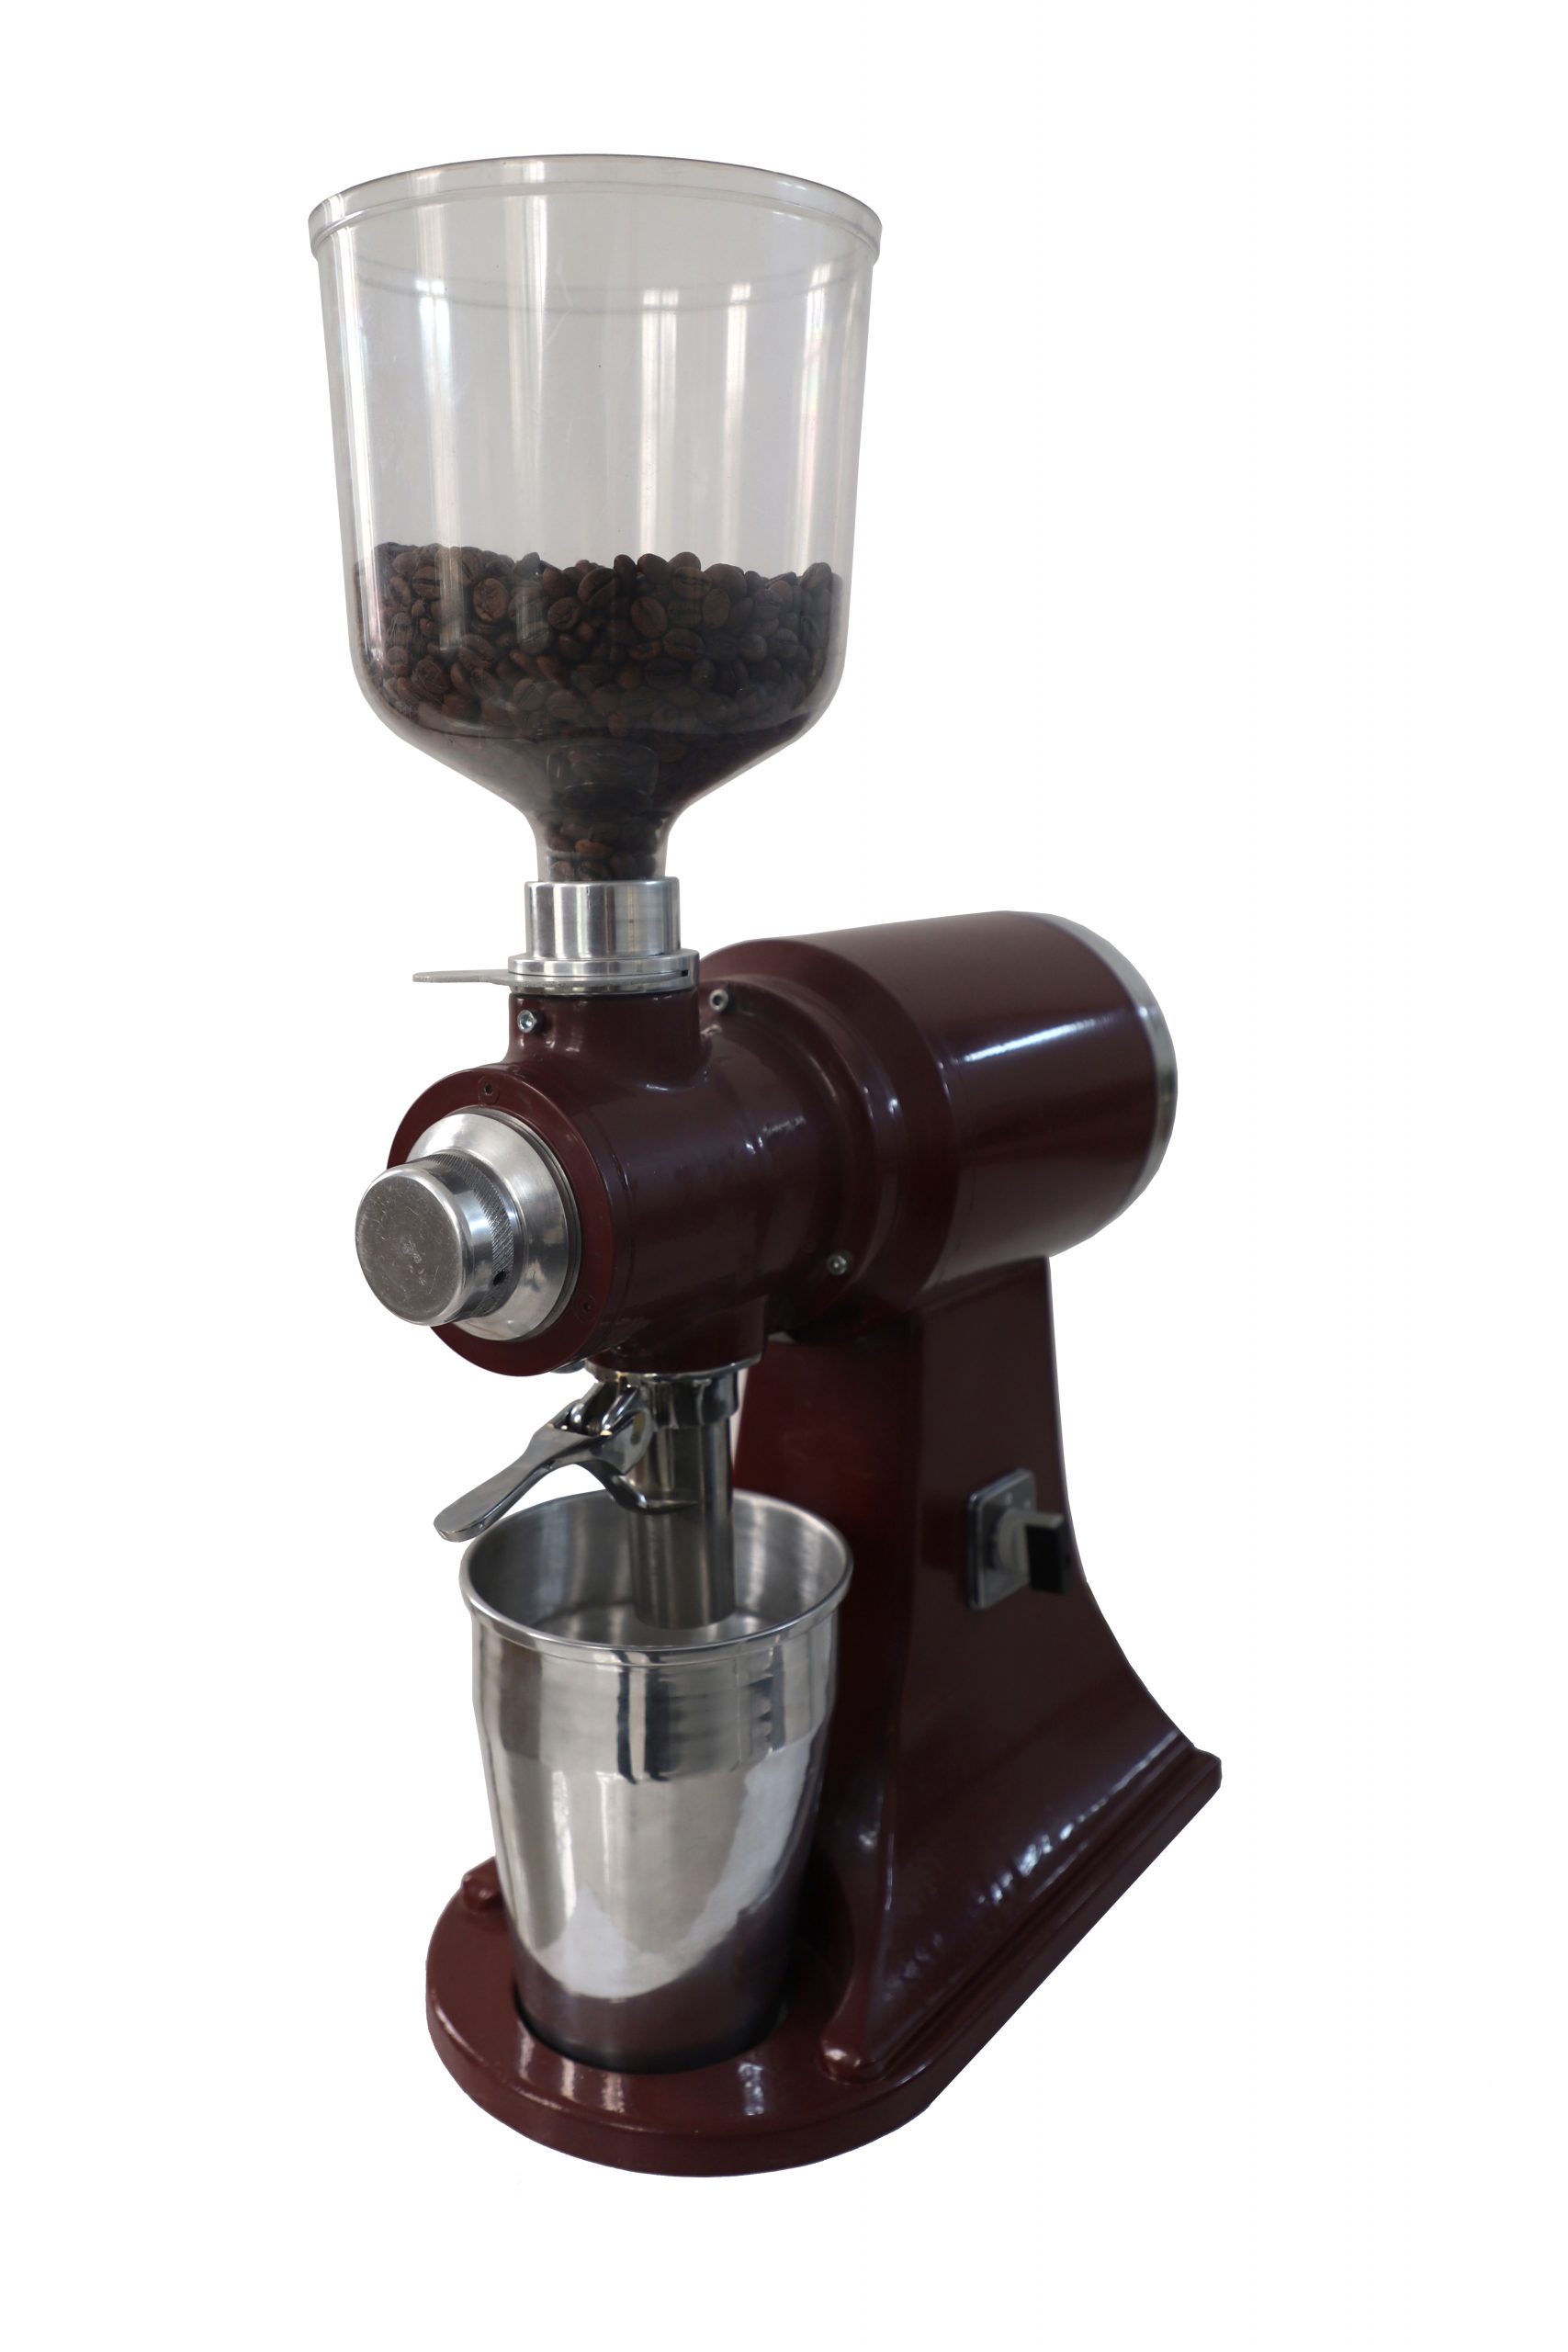 آسیاب قهوه مدل TS-1700 شتری